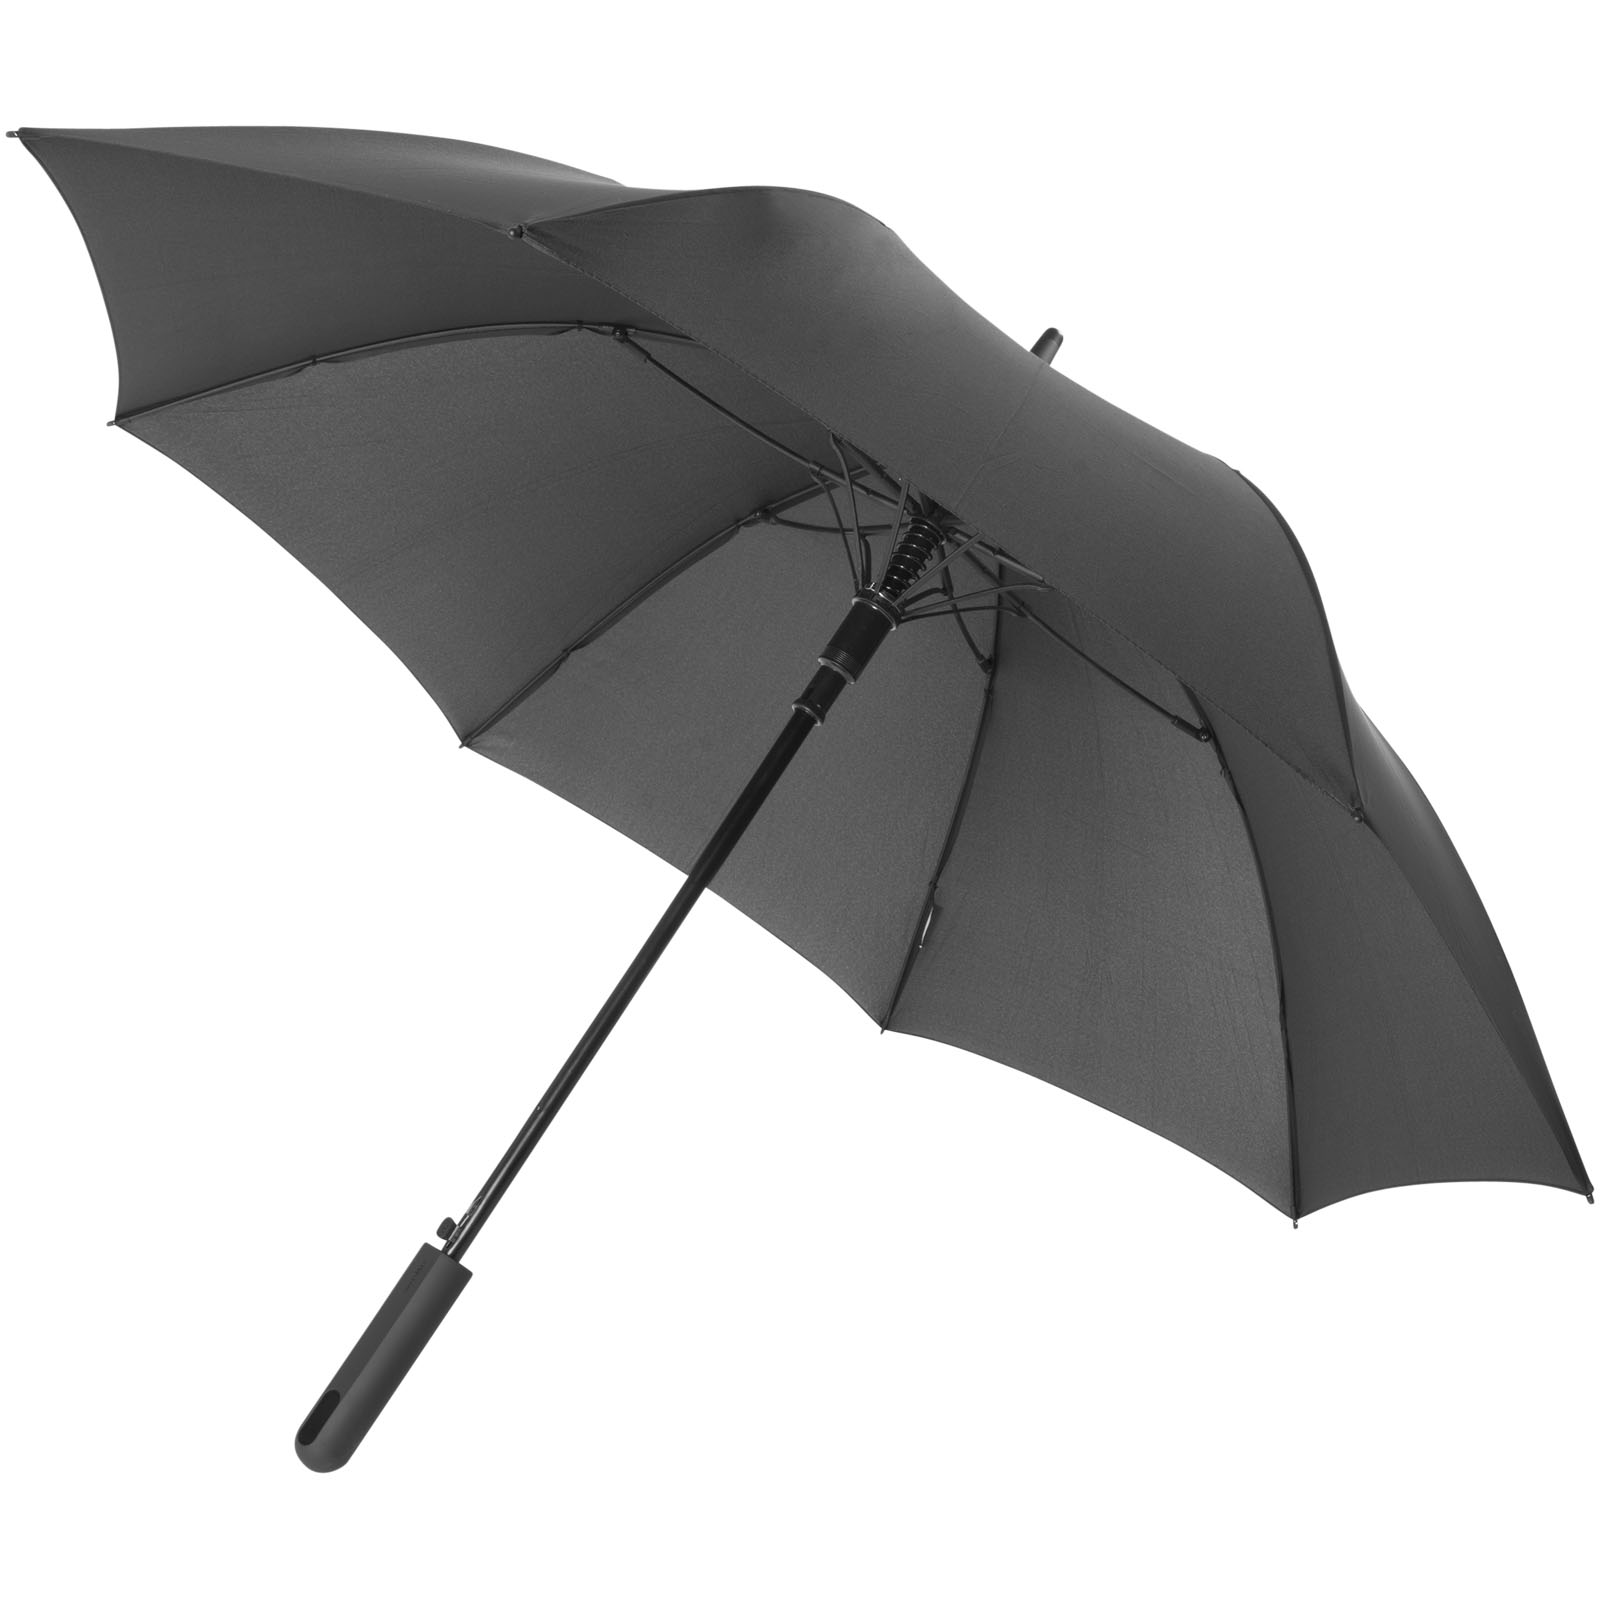 23" Noon Automatic Storm Umbrella - New Milton